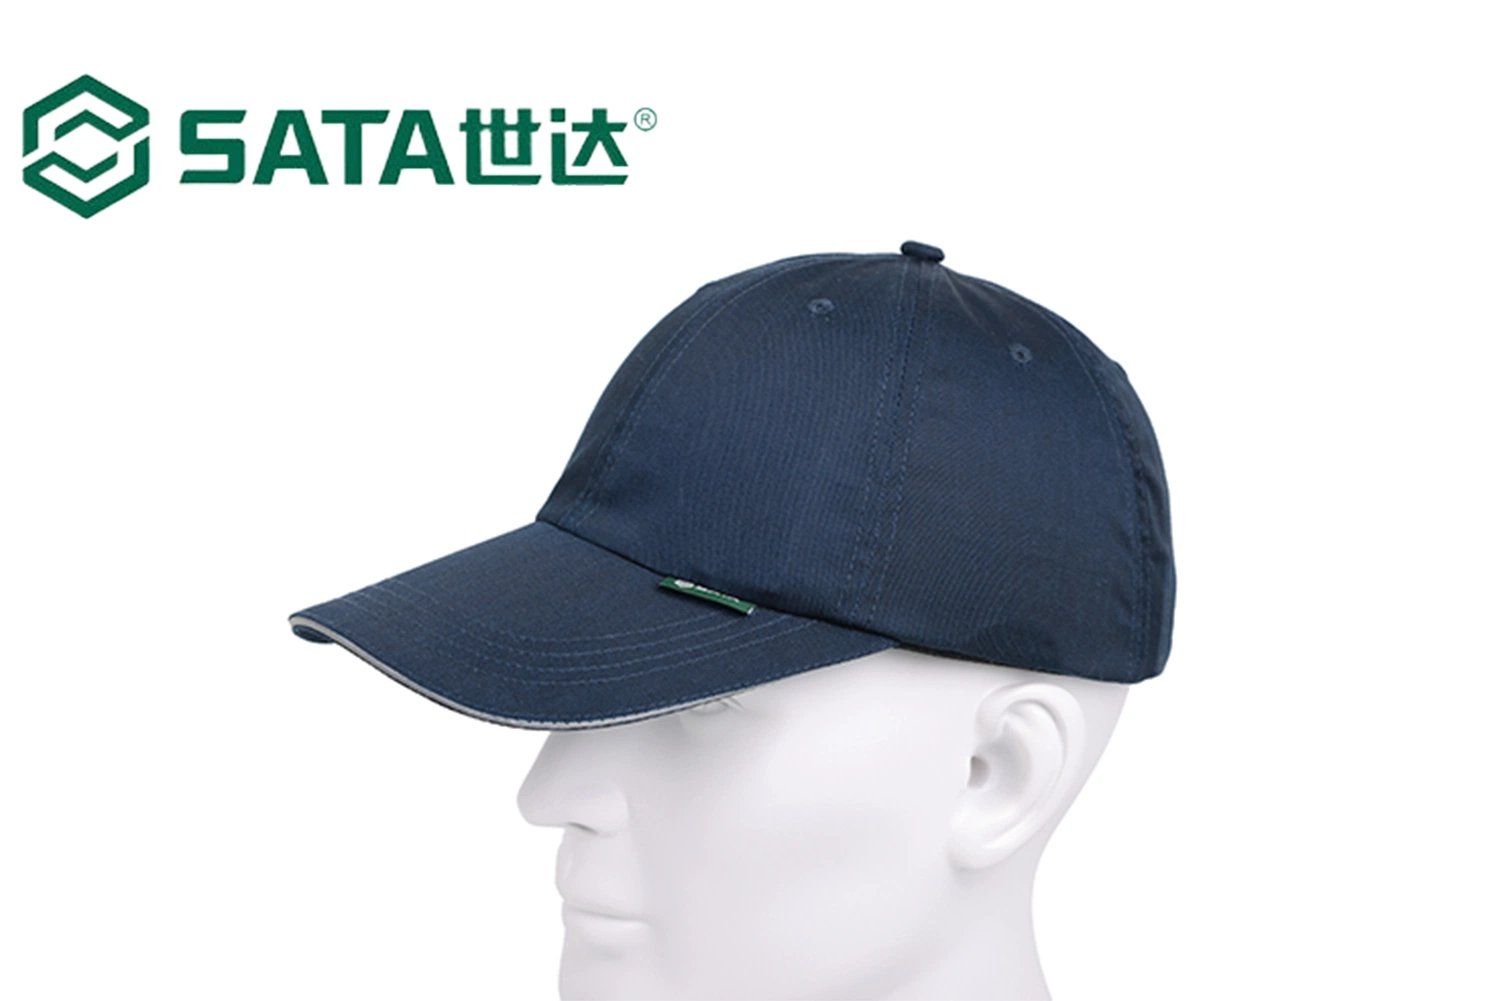 Epi SATA (Apex Tool Group) HDPE Shell do interior do capacete de segurança no trabalho Segurança respirável Anti-Impact forma leve de protecção Casual Hat